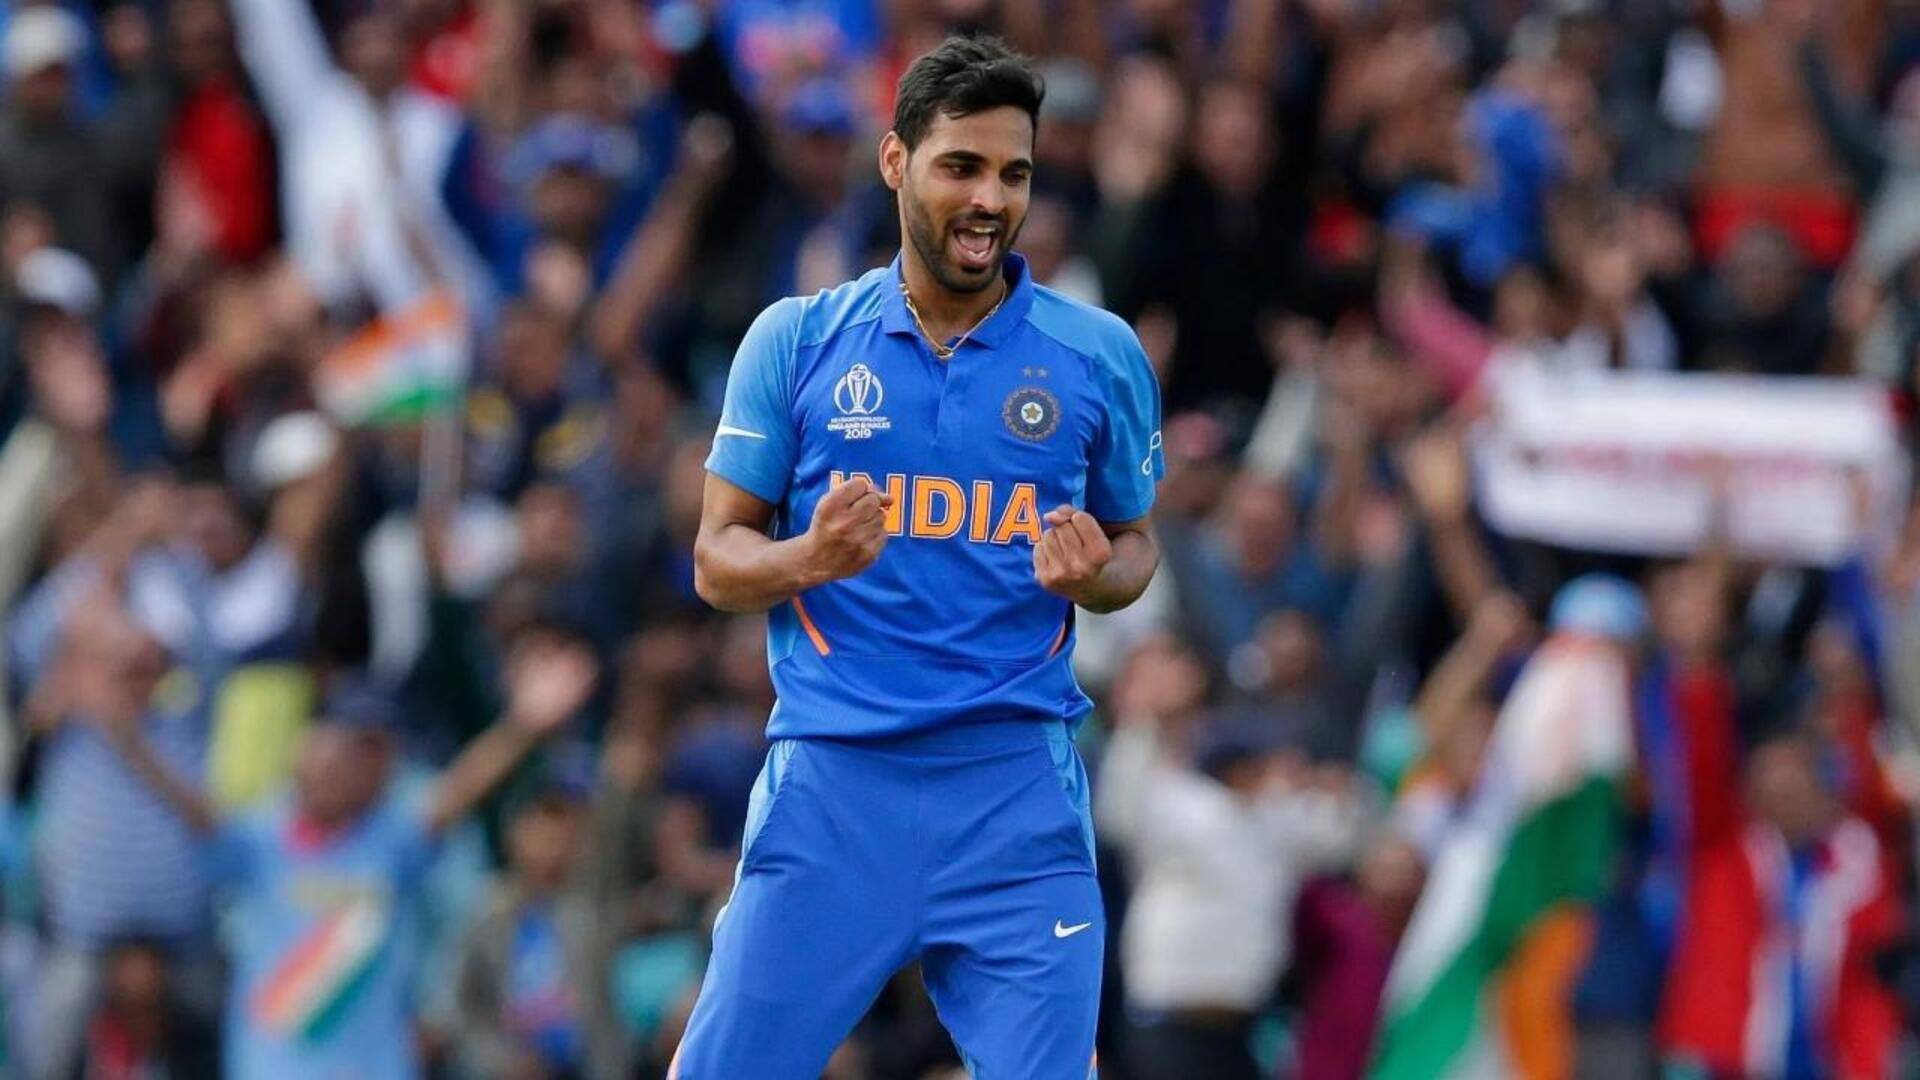 भुवनेश्वर कुमार की हो सकती है भारतीय क्रिकेट टीम में वापसी- रिपोर्ट 